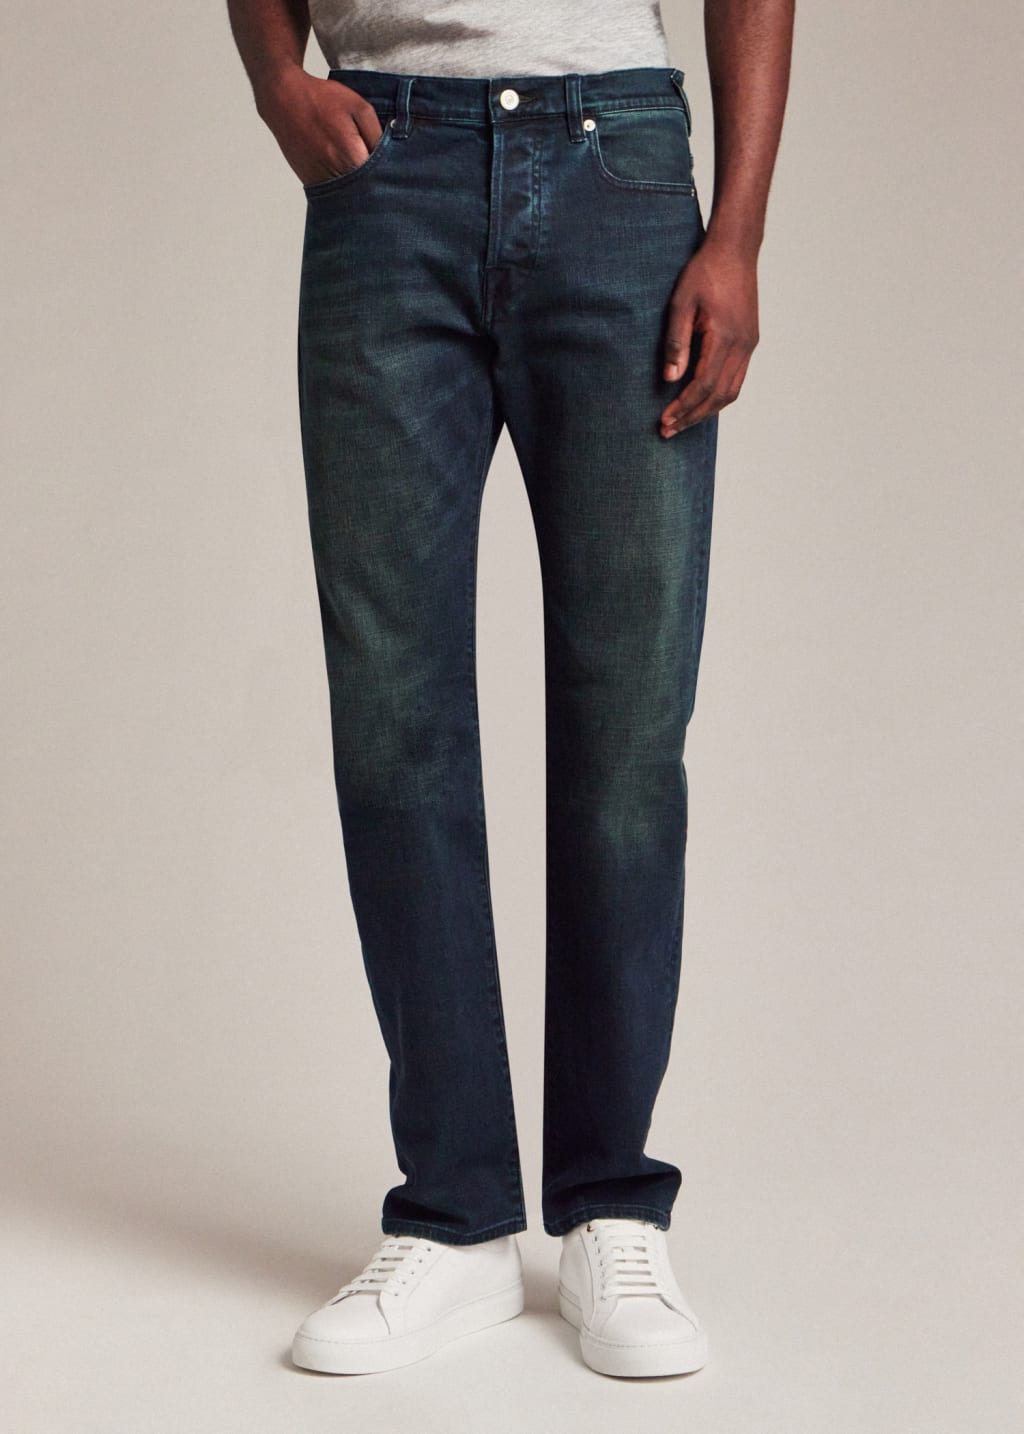 Model Wears - Standard-Fit 'Crosshatch Stretch' Blue Over-Dye Jeans Paul Smith